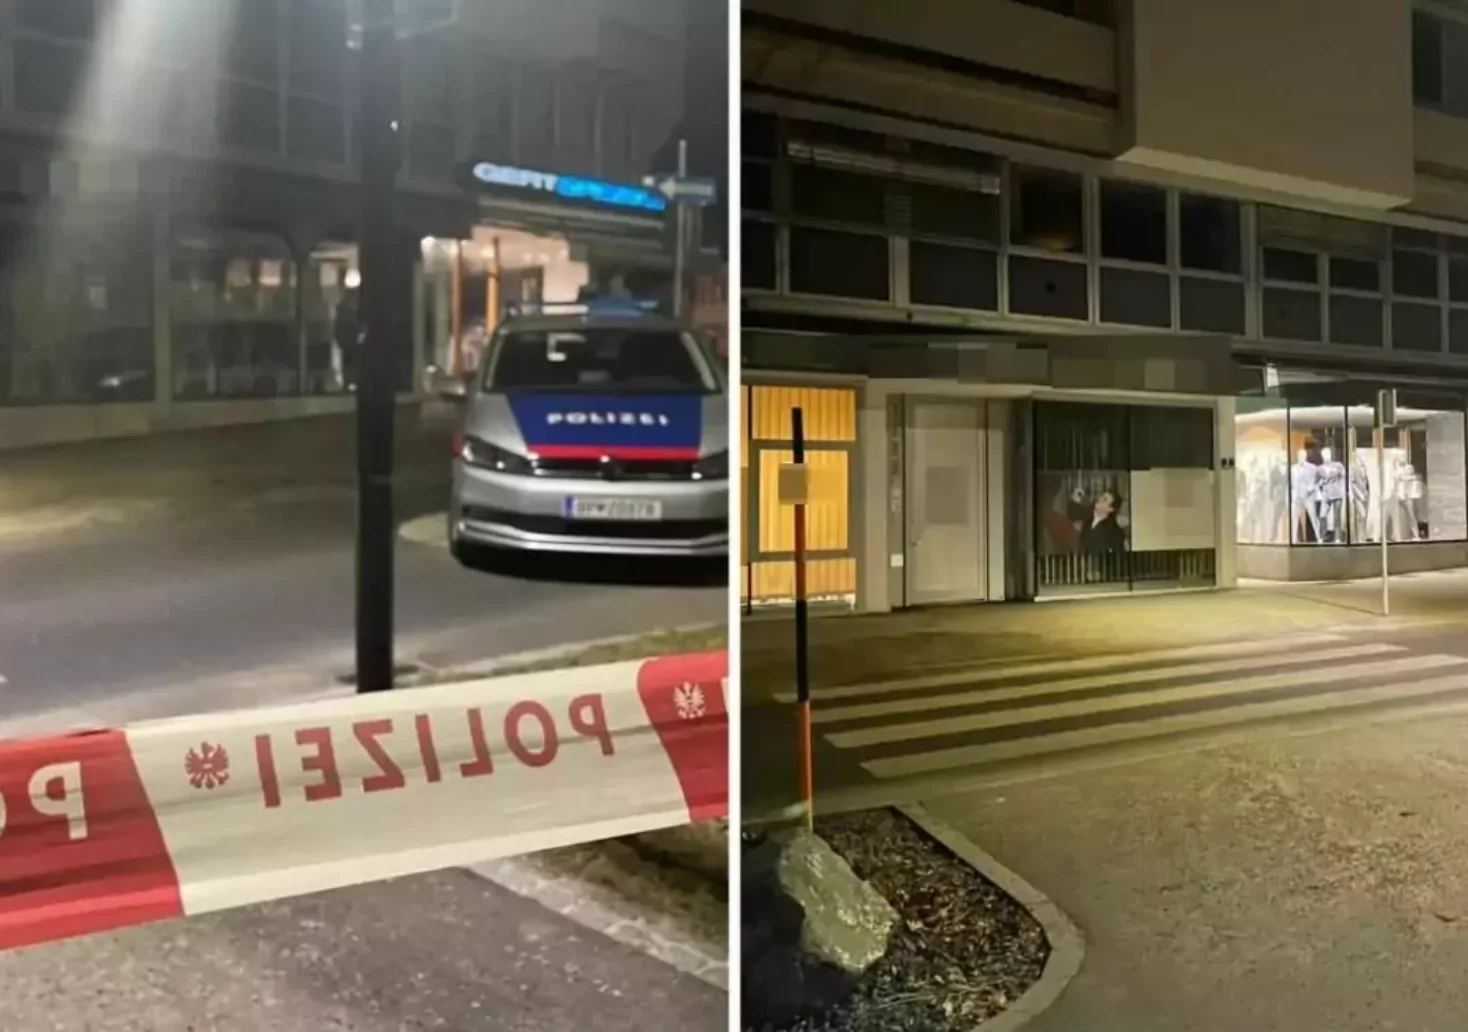 Foto in Beitrag von 5min.at: Zu sehen ist der Tatort in Klagenfurt, wo es zu der Bluttat Ende Jänner gekommen ist.